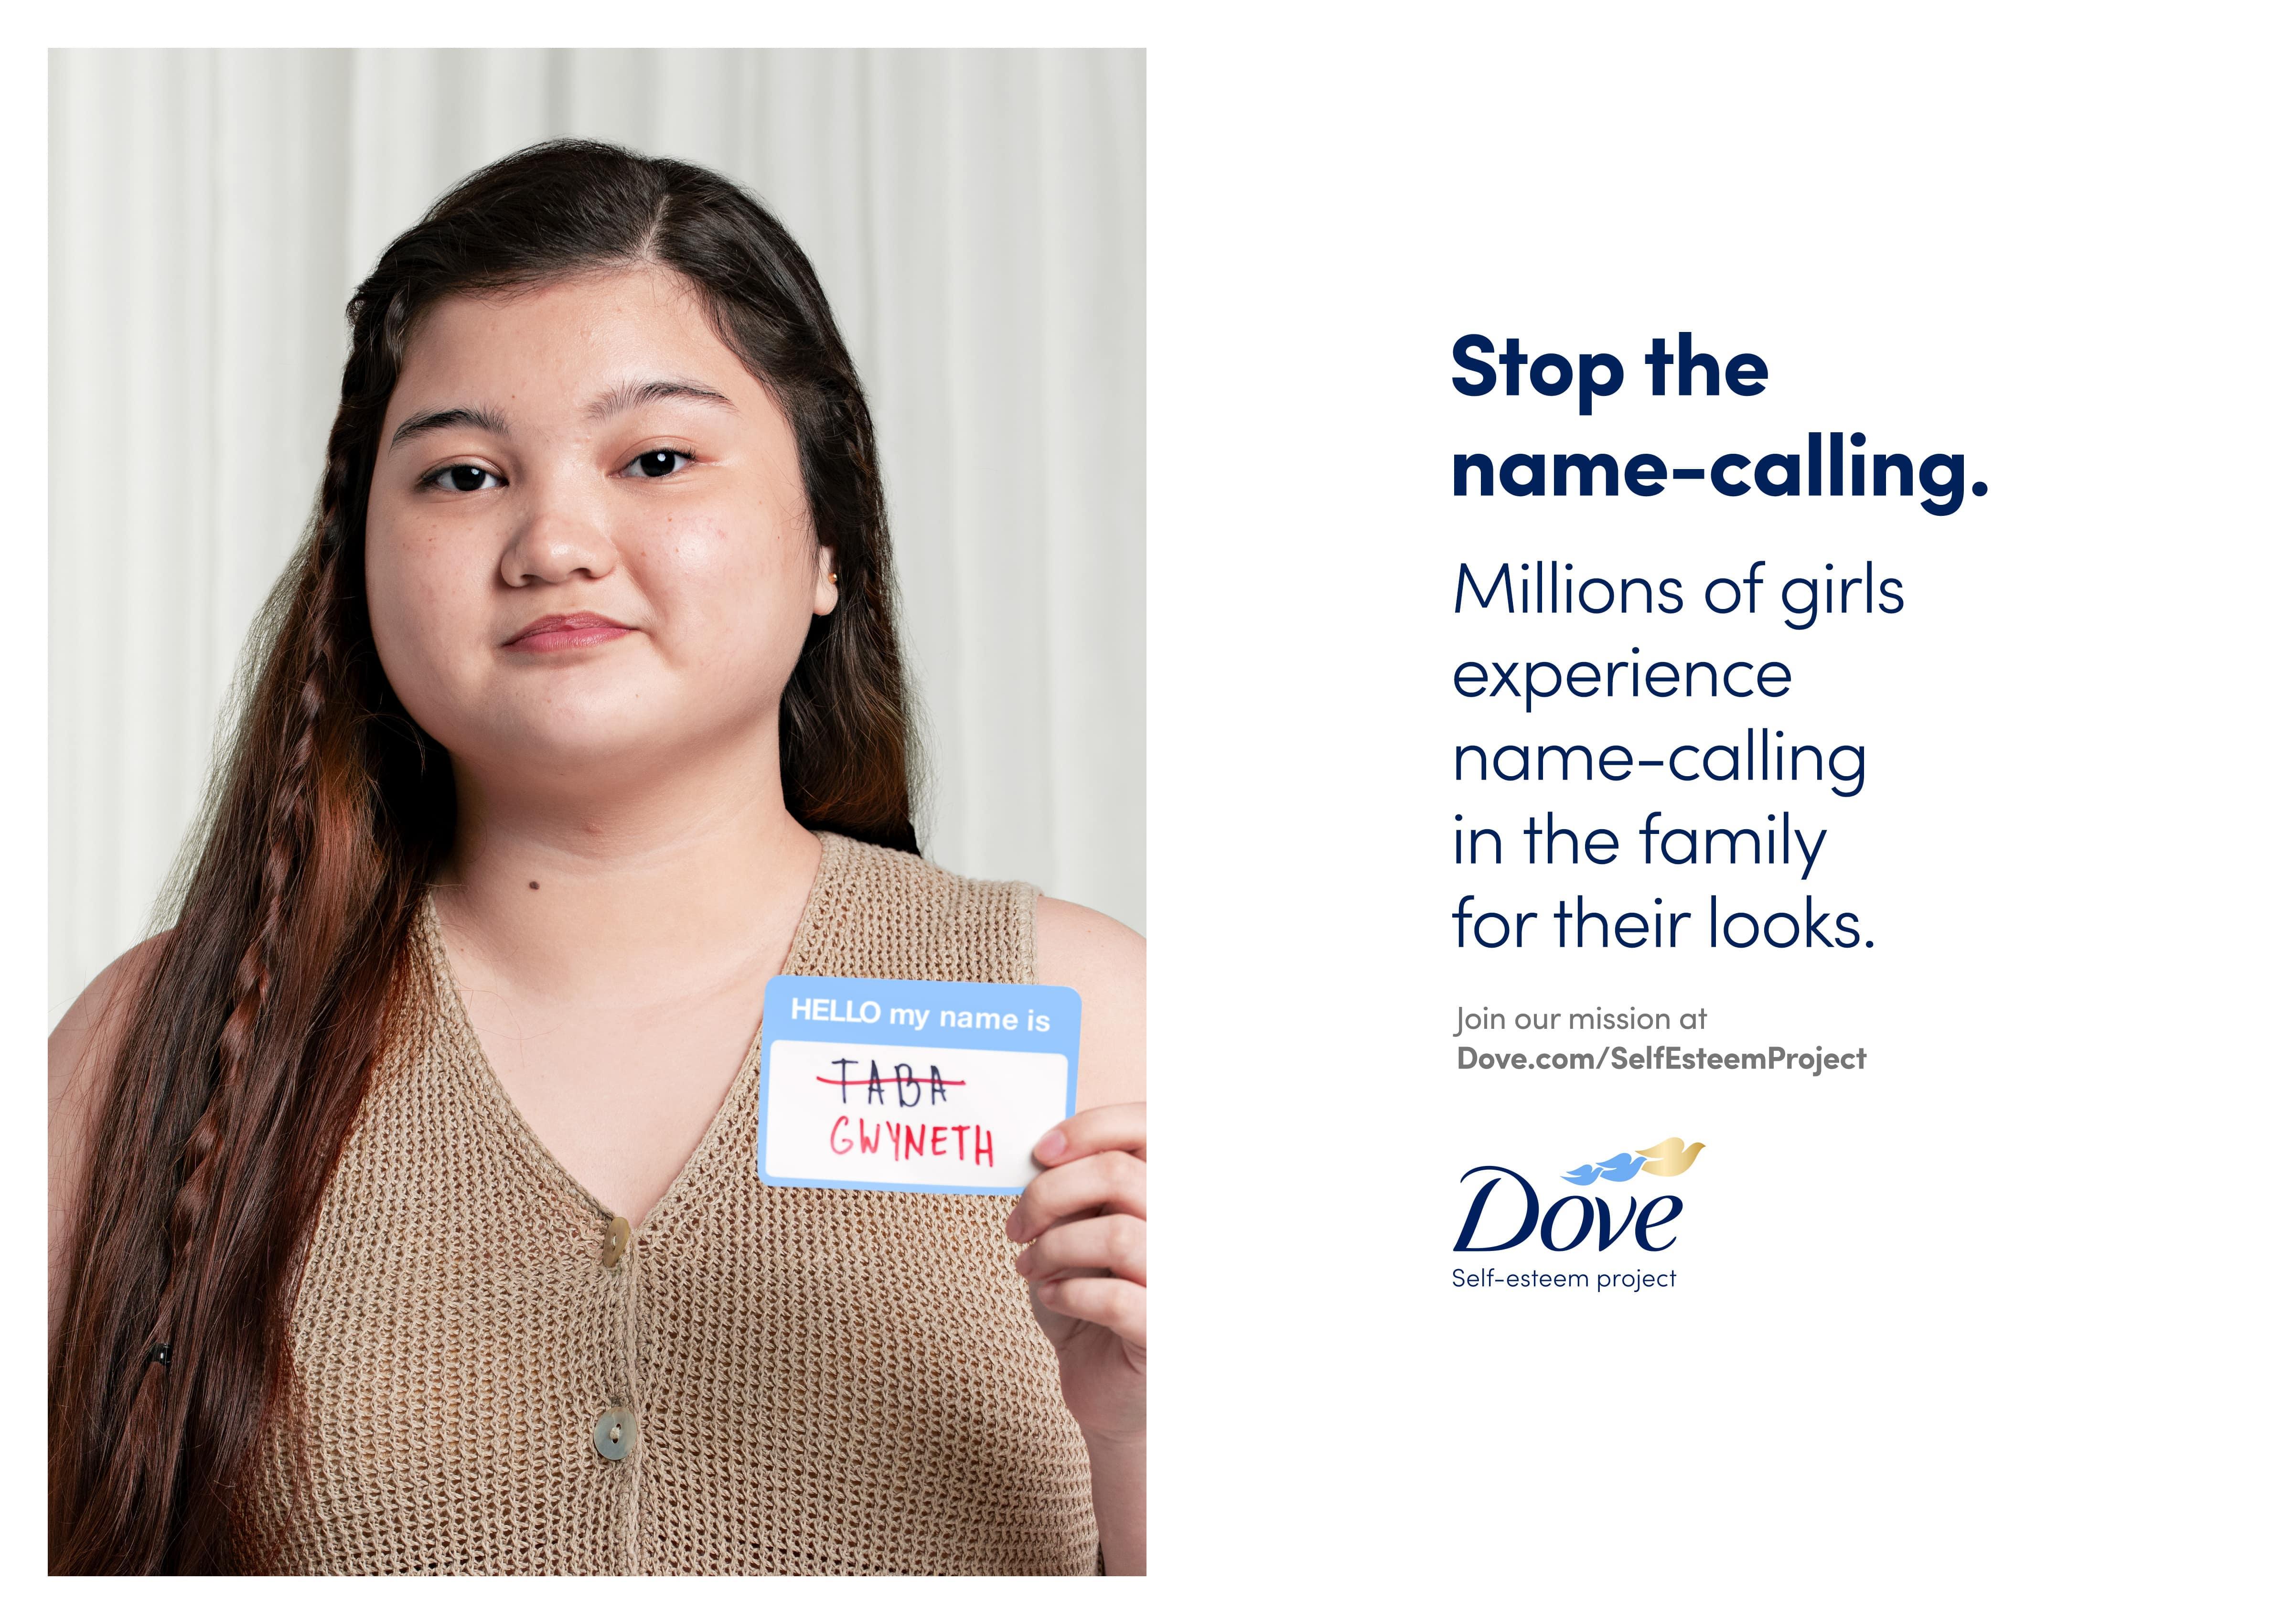 Membangun Kepercayaan pada Gadis Muda Melalui Kampanye #StopTheNameCalling Dove